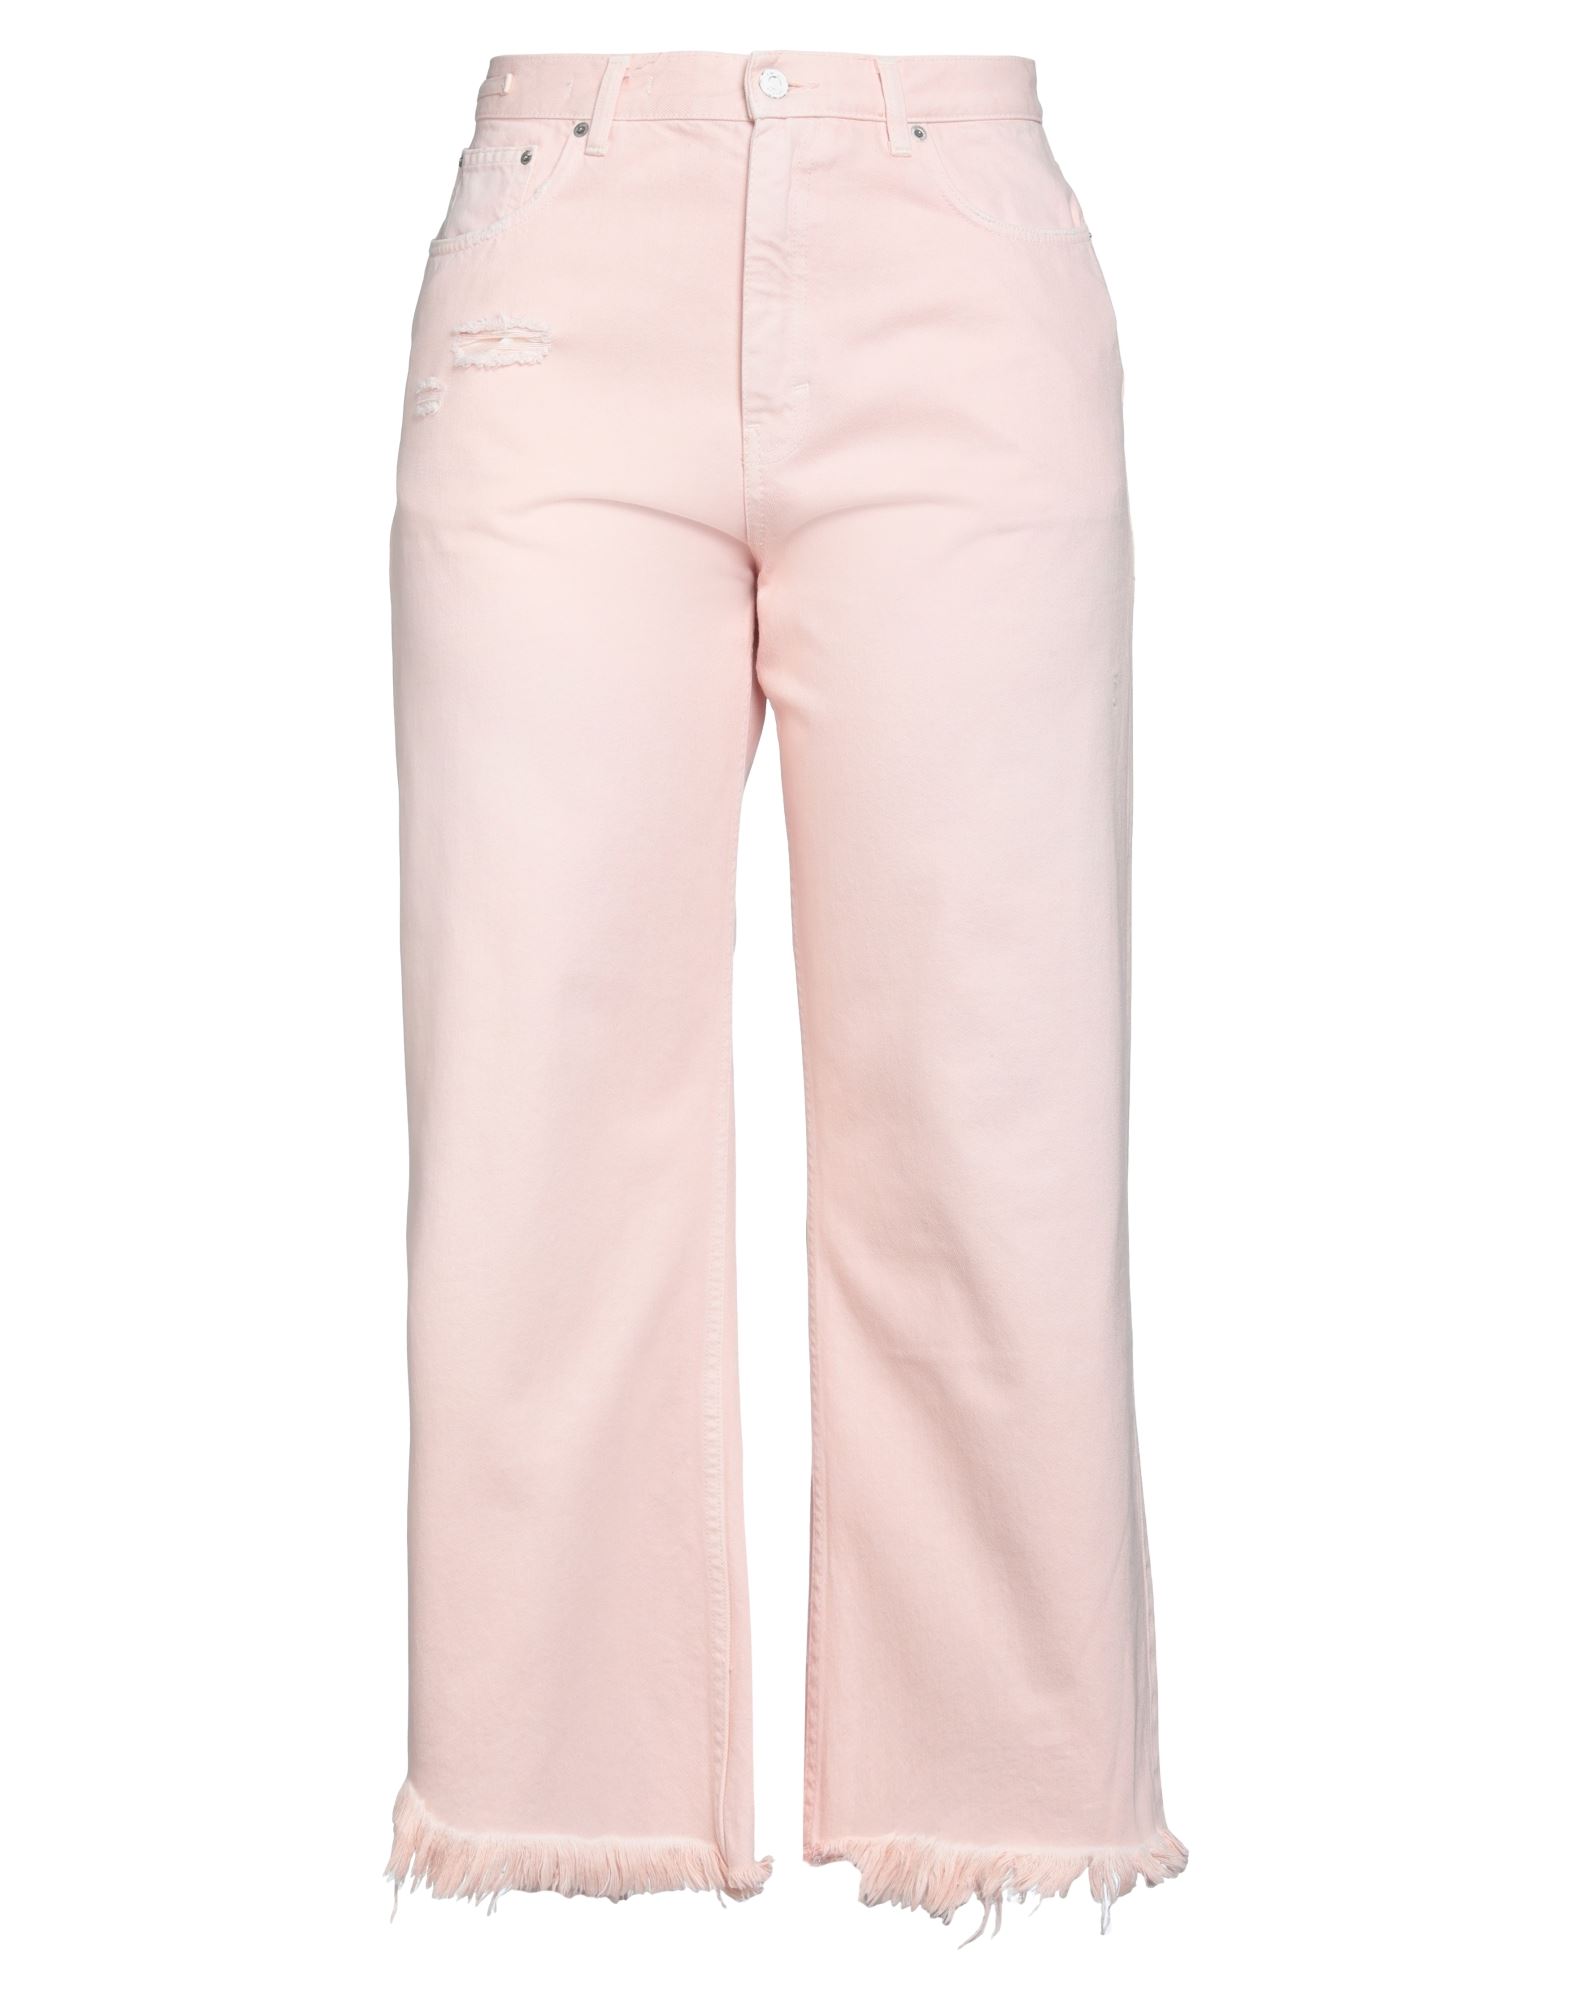 Shop Haikure Woman Jeans Light Pink Size 29 Cotton